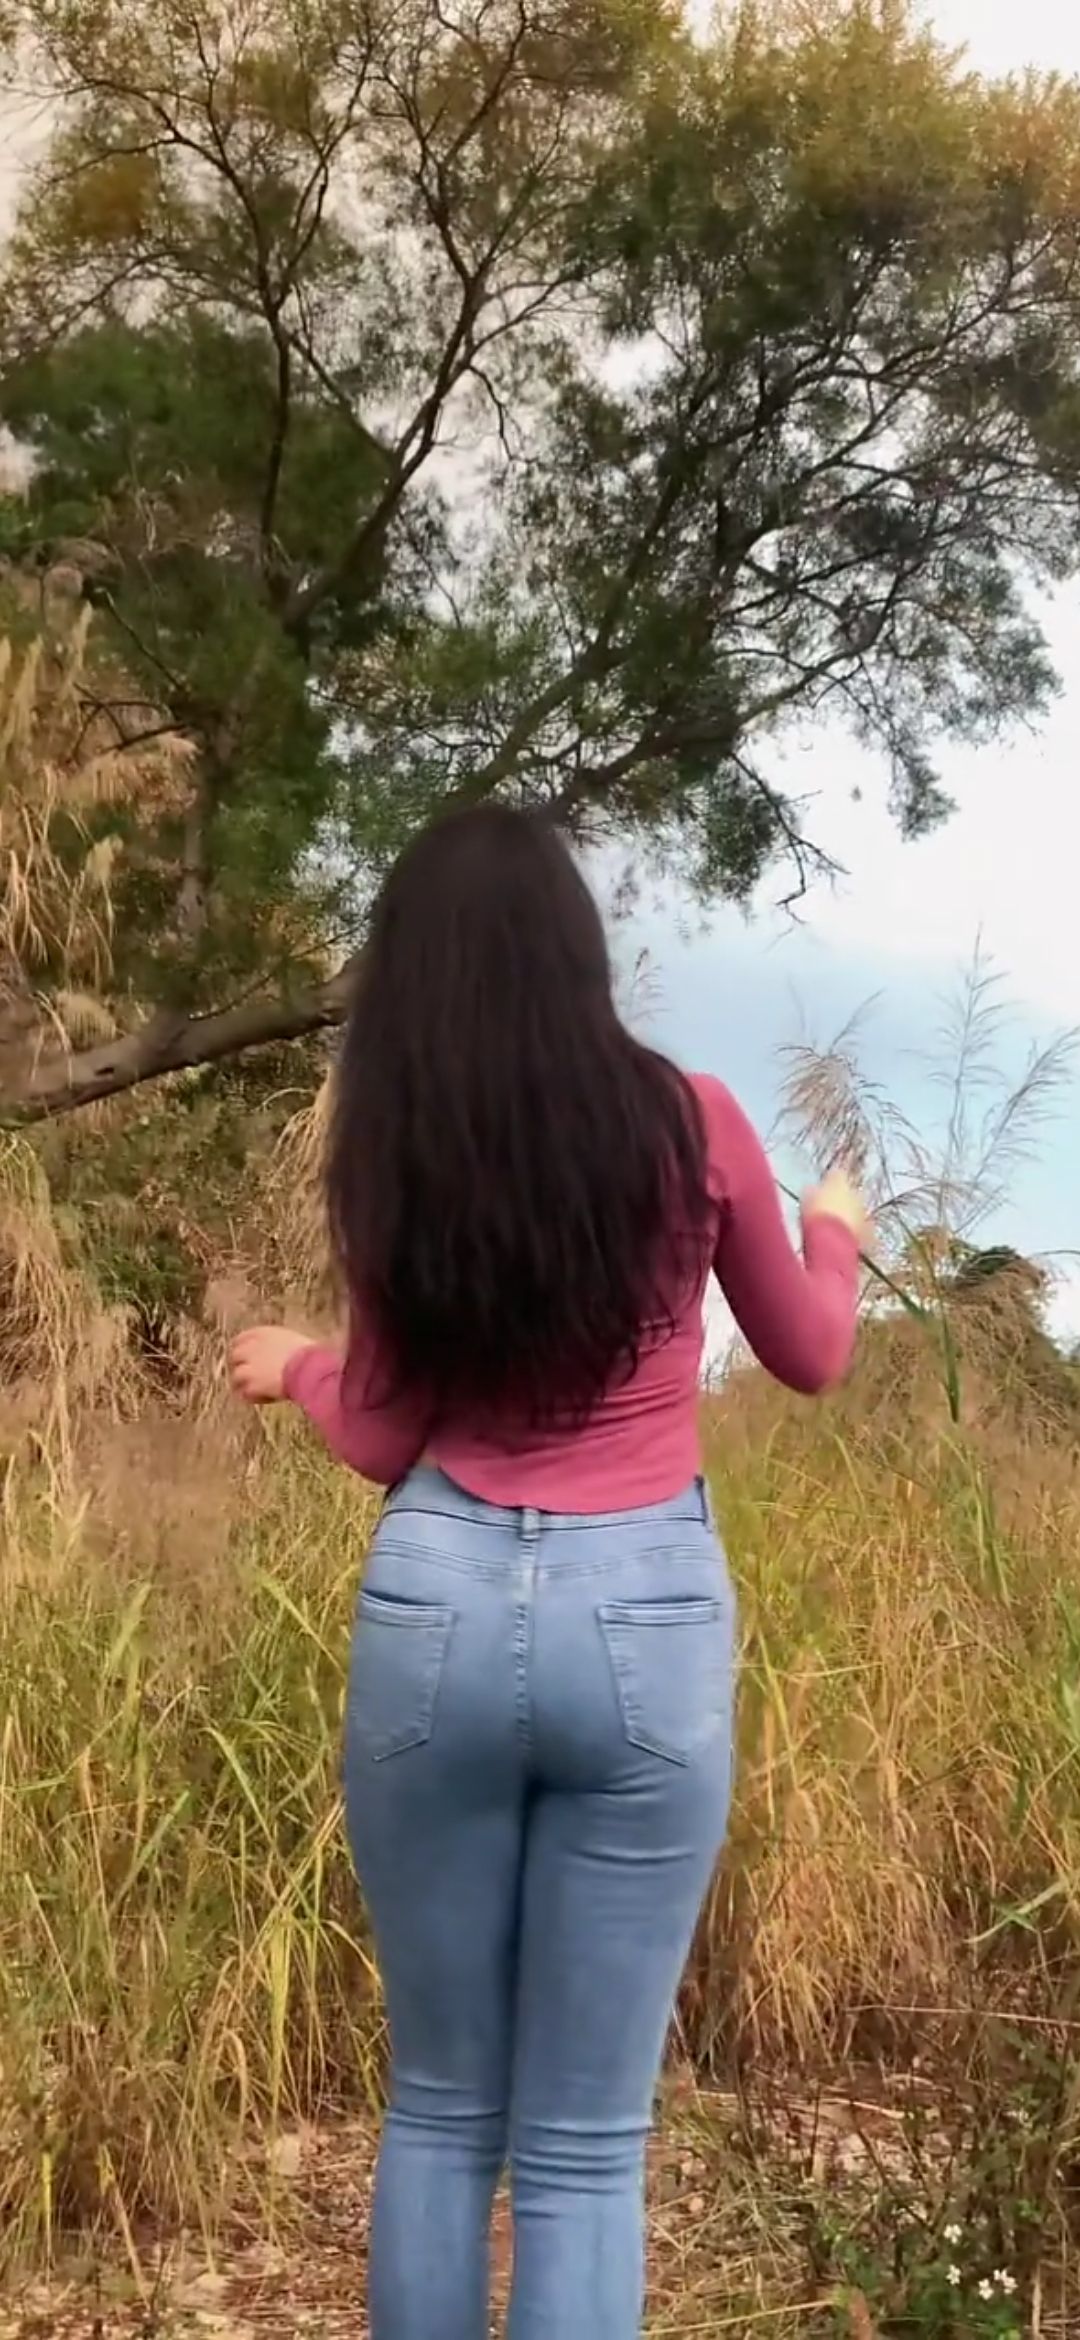 [视频]河南土地家柳树下跳舞的牛仔裤美女